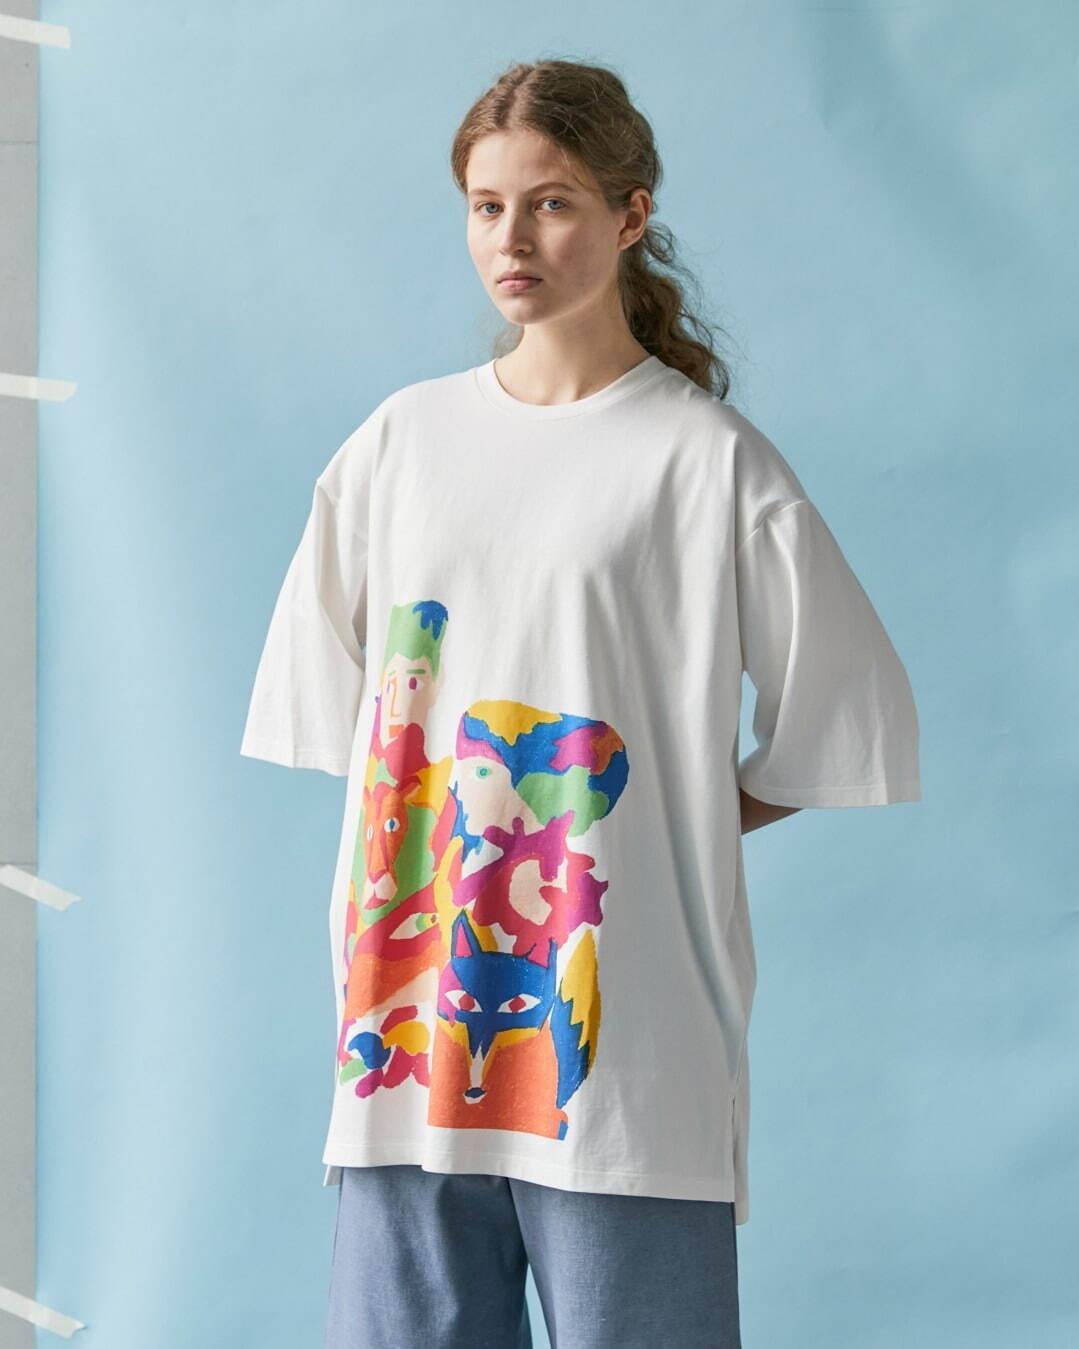 フラボア“クレパス”で描いたグラフィックのTシャツやワンピース、イラストレーターとコラボ コピー